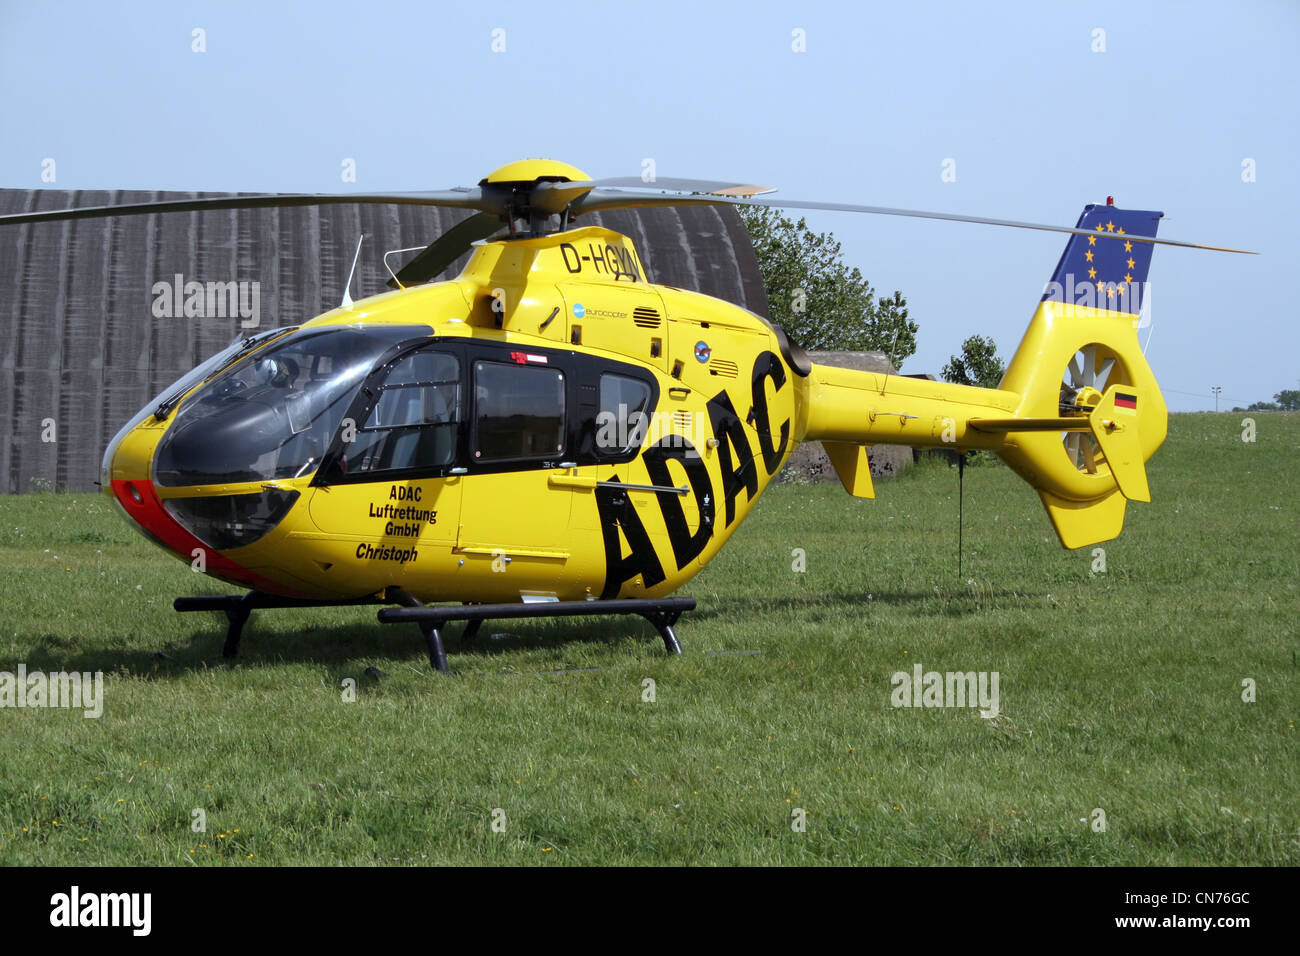 L'allemand ADAC (Automobile club allemand) Eurocopter EC135 d'ambulance aérienne par hélicoptère Banque D'Images